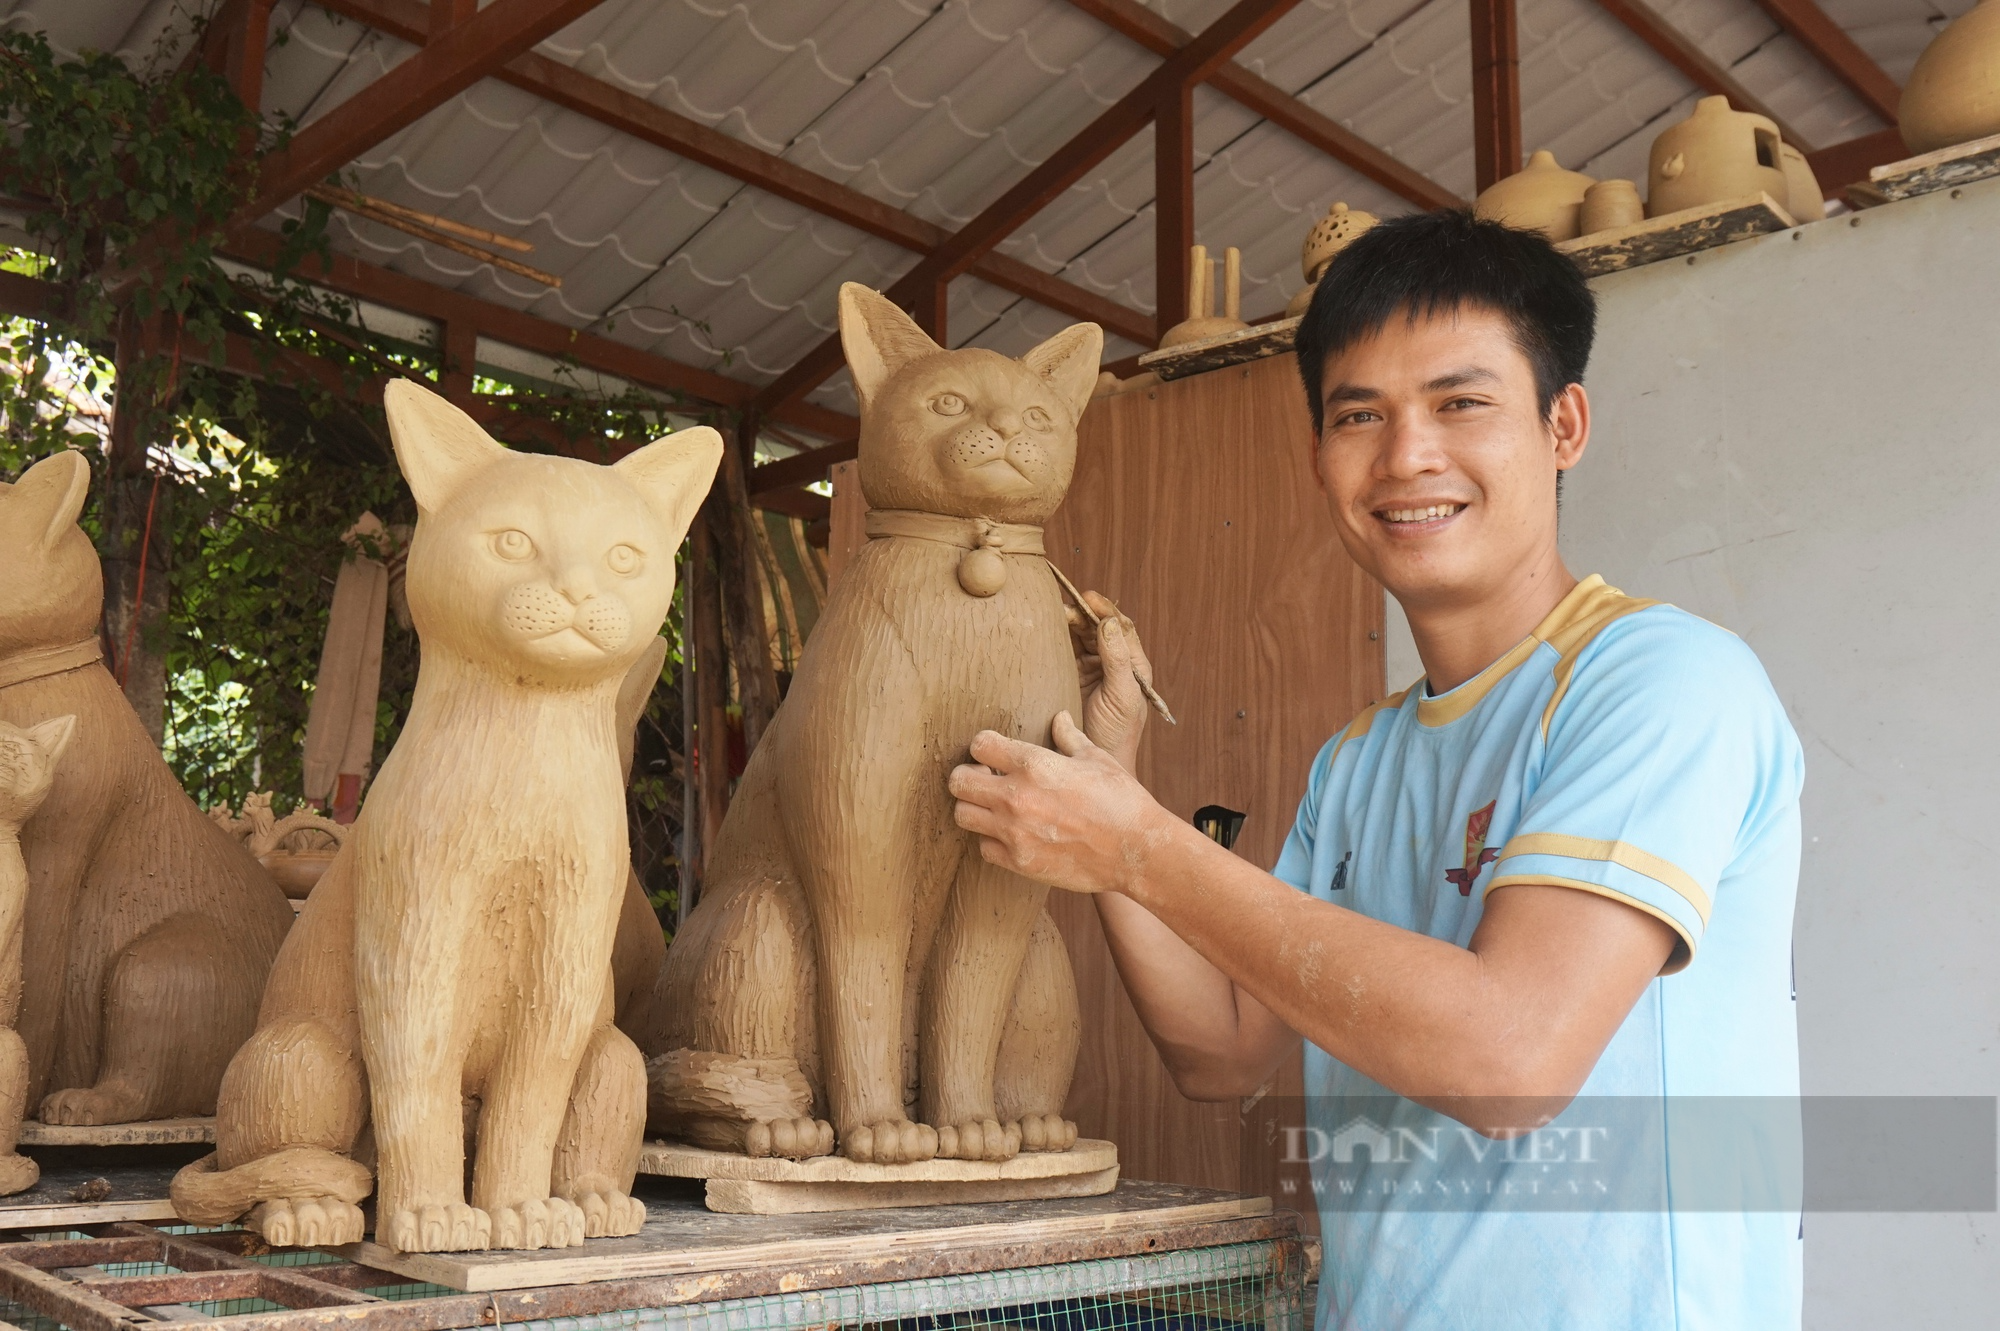 Hãy khám phá làng cổ Hội An, Quảng Nam và chứng kiến sự tài năng thực sự của các nghệ nhân nặn gốm. Nếu bạn quan tâm đến nghệ thuật nặn linh và muốn tìm hiểu về mèo đất nặn, tại đây là nơi lý tưởng để bắt đầu.